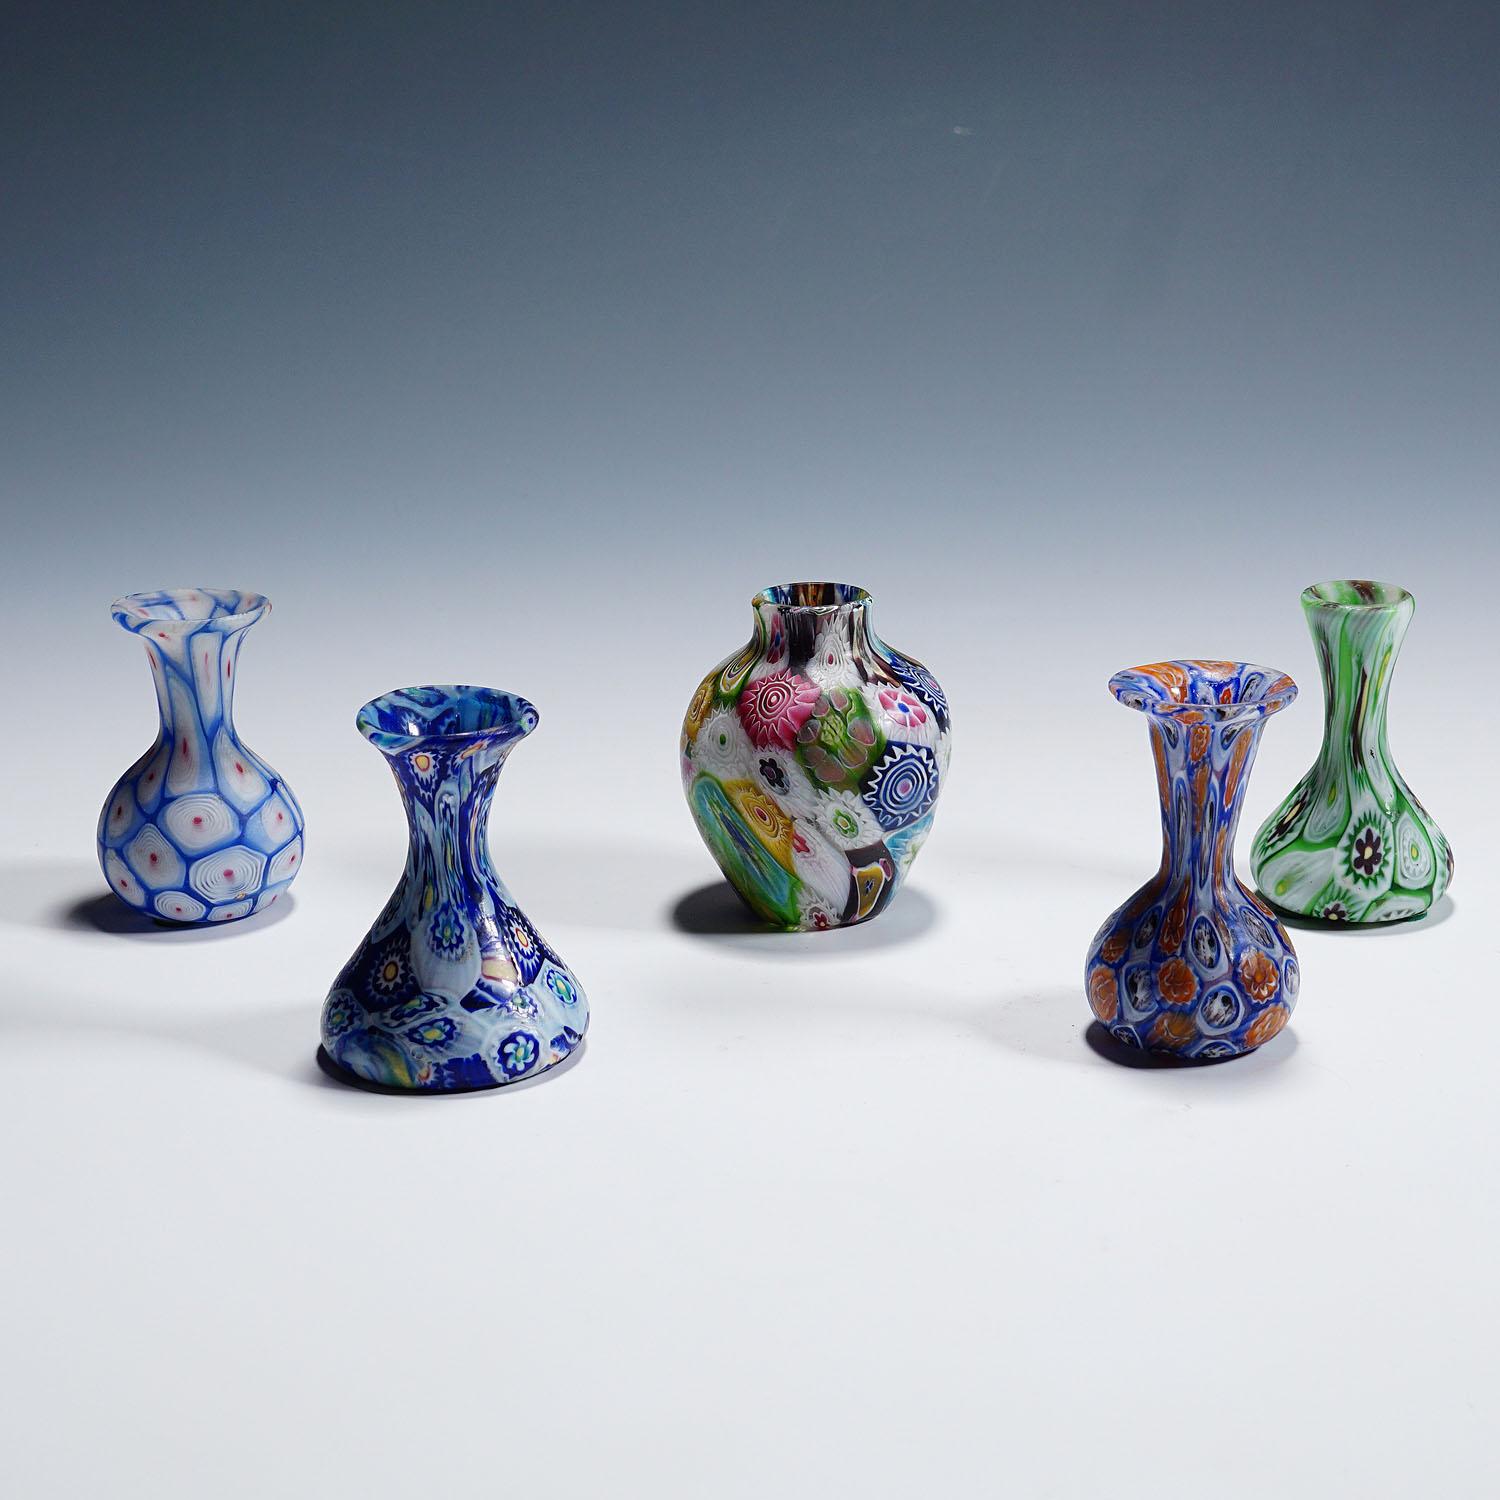 Satz von fünf antiken Murrine-Vasen von Fratelli Toso, Murano

Ein Satz von fünf Millefiore-Murrine-Glasvasen, hergestellt von Vetreria Fratelli Toso um 1910-20. Alle Vasen sind mit polychromen mehrfarbigen Murrinen ausgeführt und haben eine geätzte